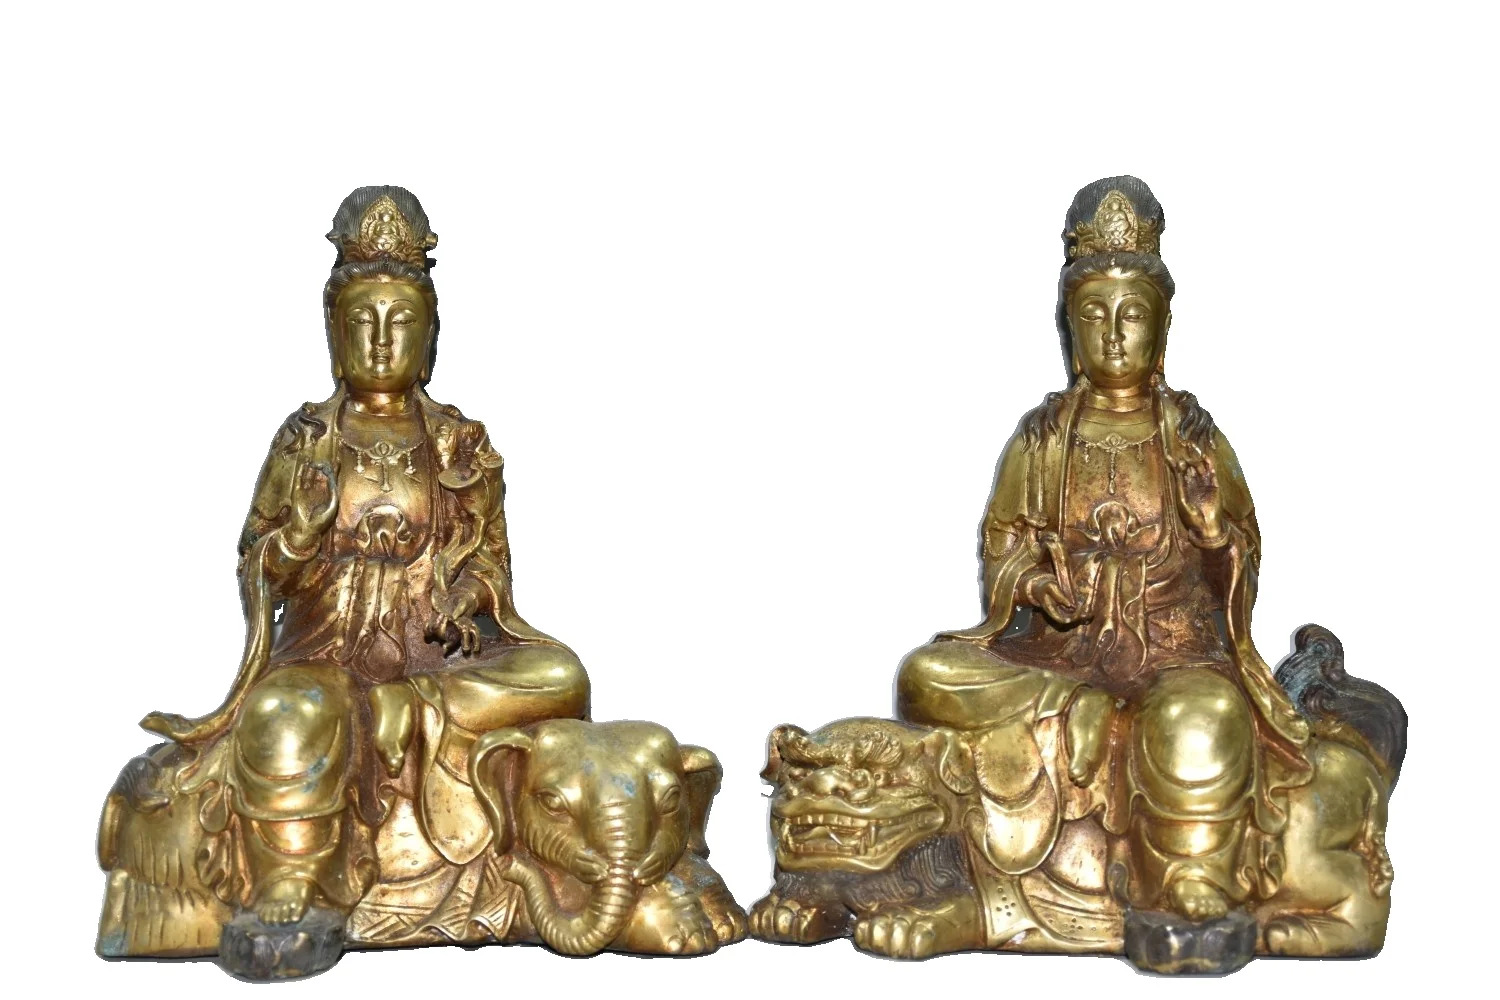 

Ранняя коллекция Laojunlu из чистой меди и позолоченной манджуши и пуруша набор статуй Будды античный бронзовый шедевр